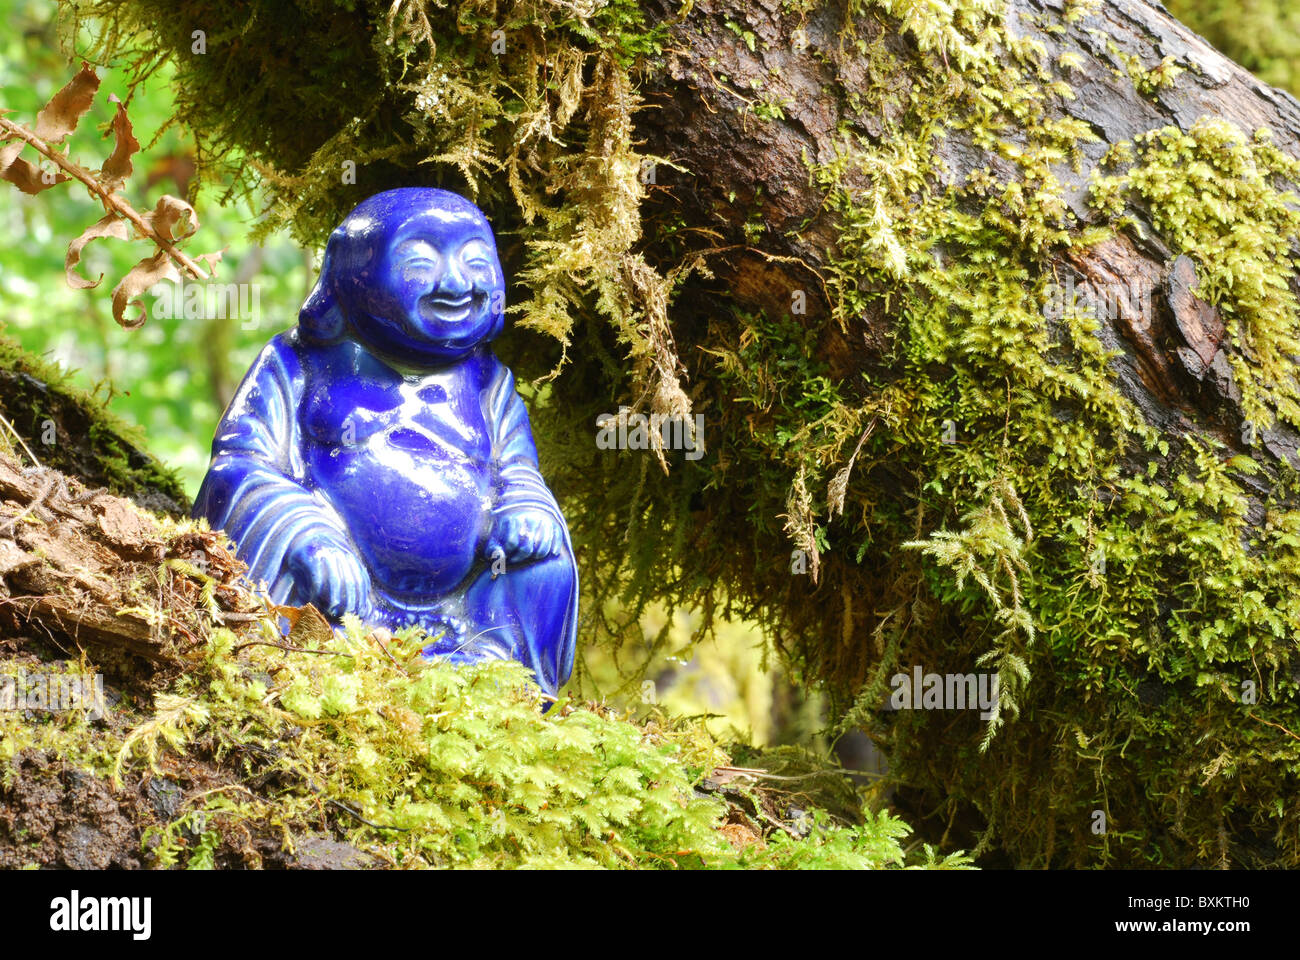 Blaue Porzellan Buddhastatue eingebettet in moosigen Äste Stockfoto